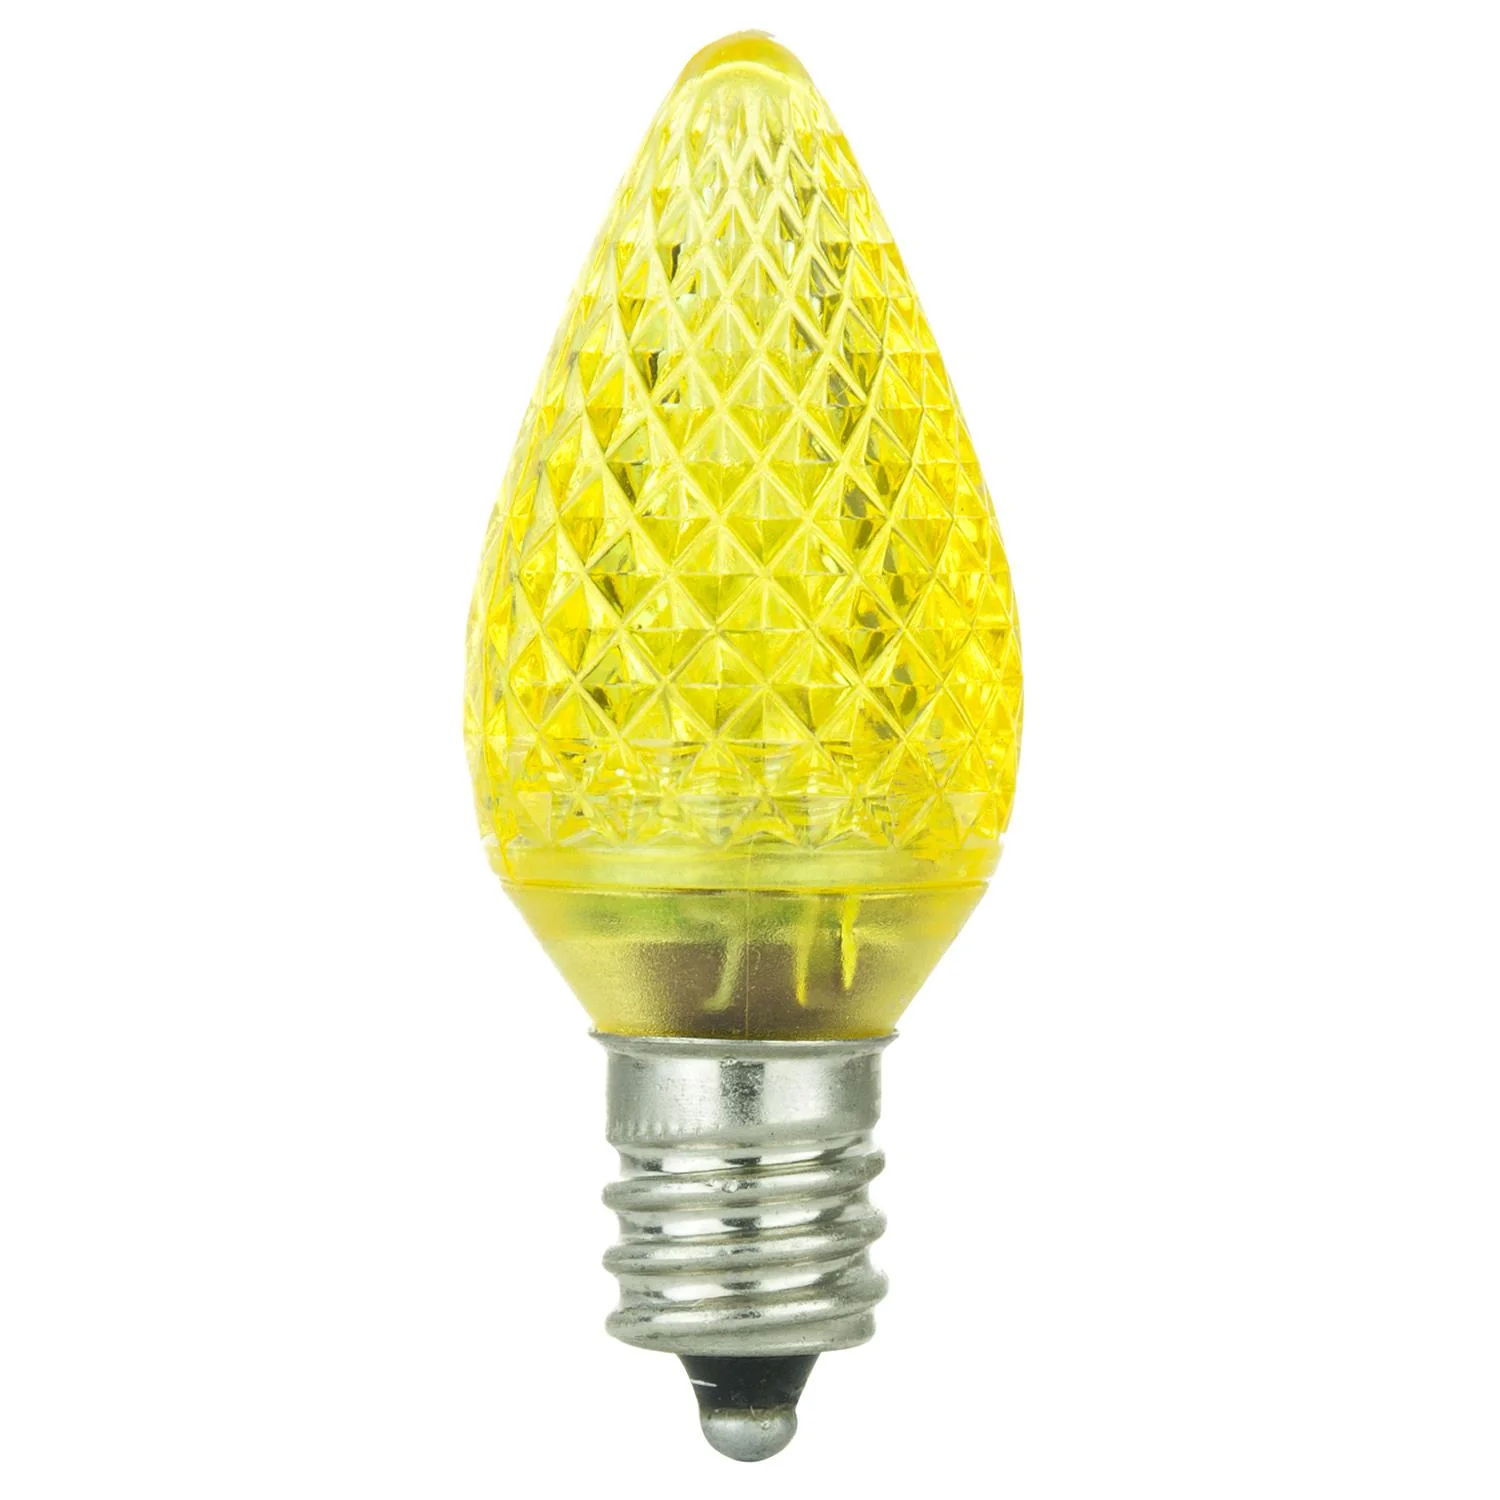 12 Best Night Light LED Bulb for 2023